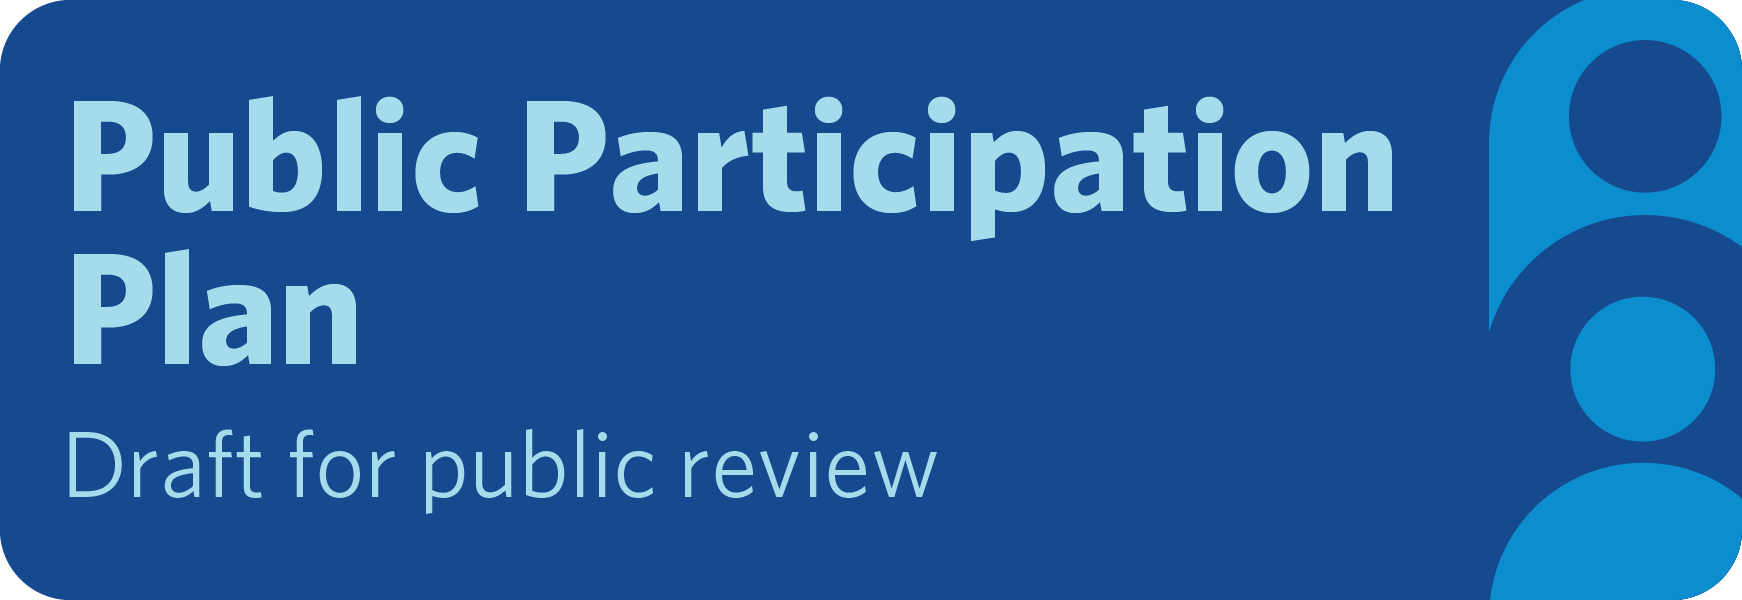 Public Participation Plan. Draft for public review.